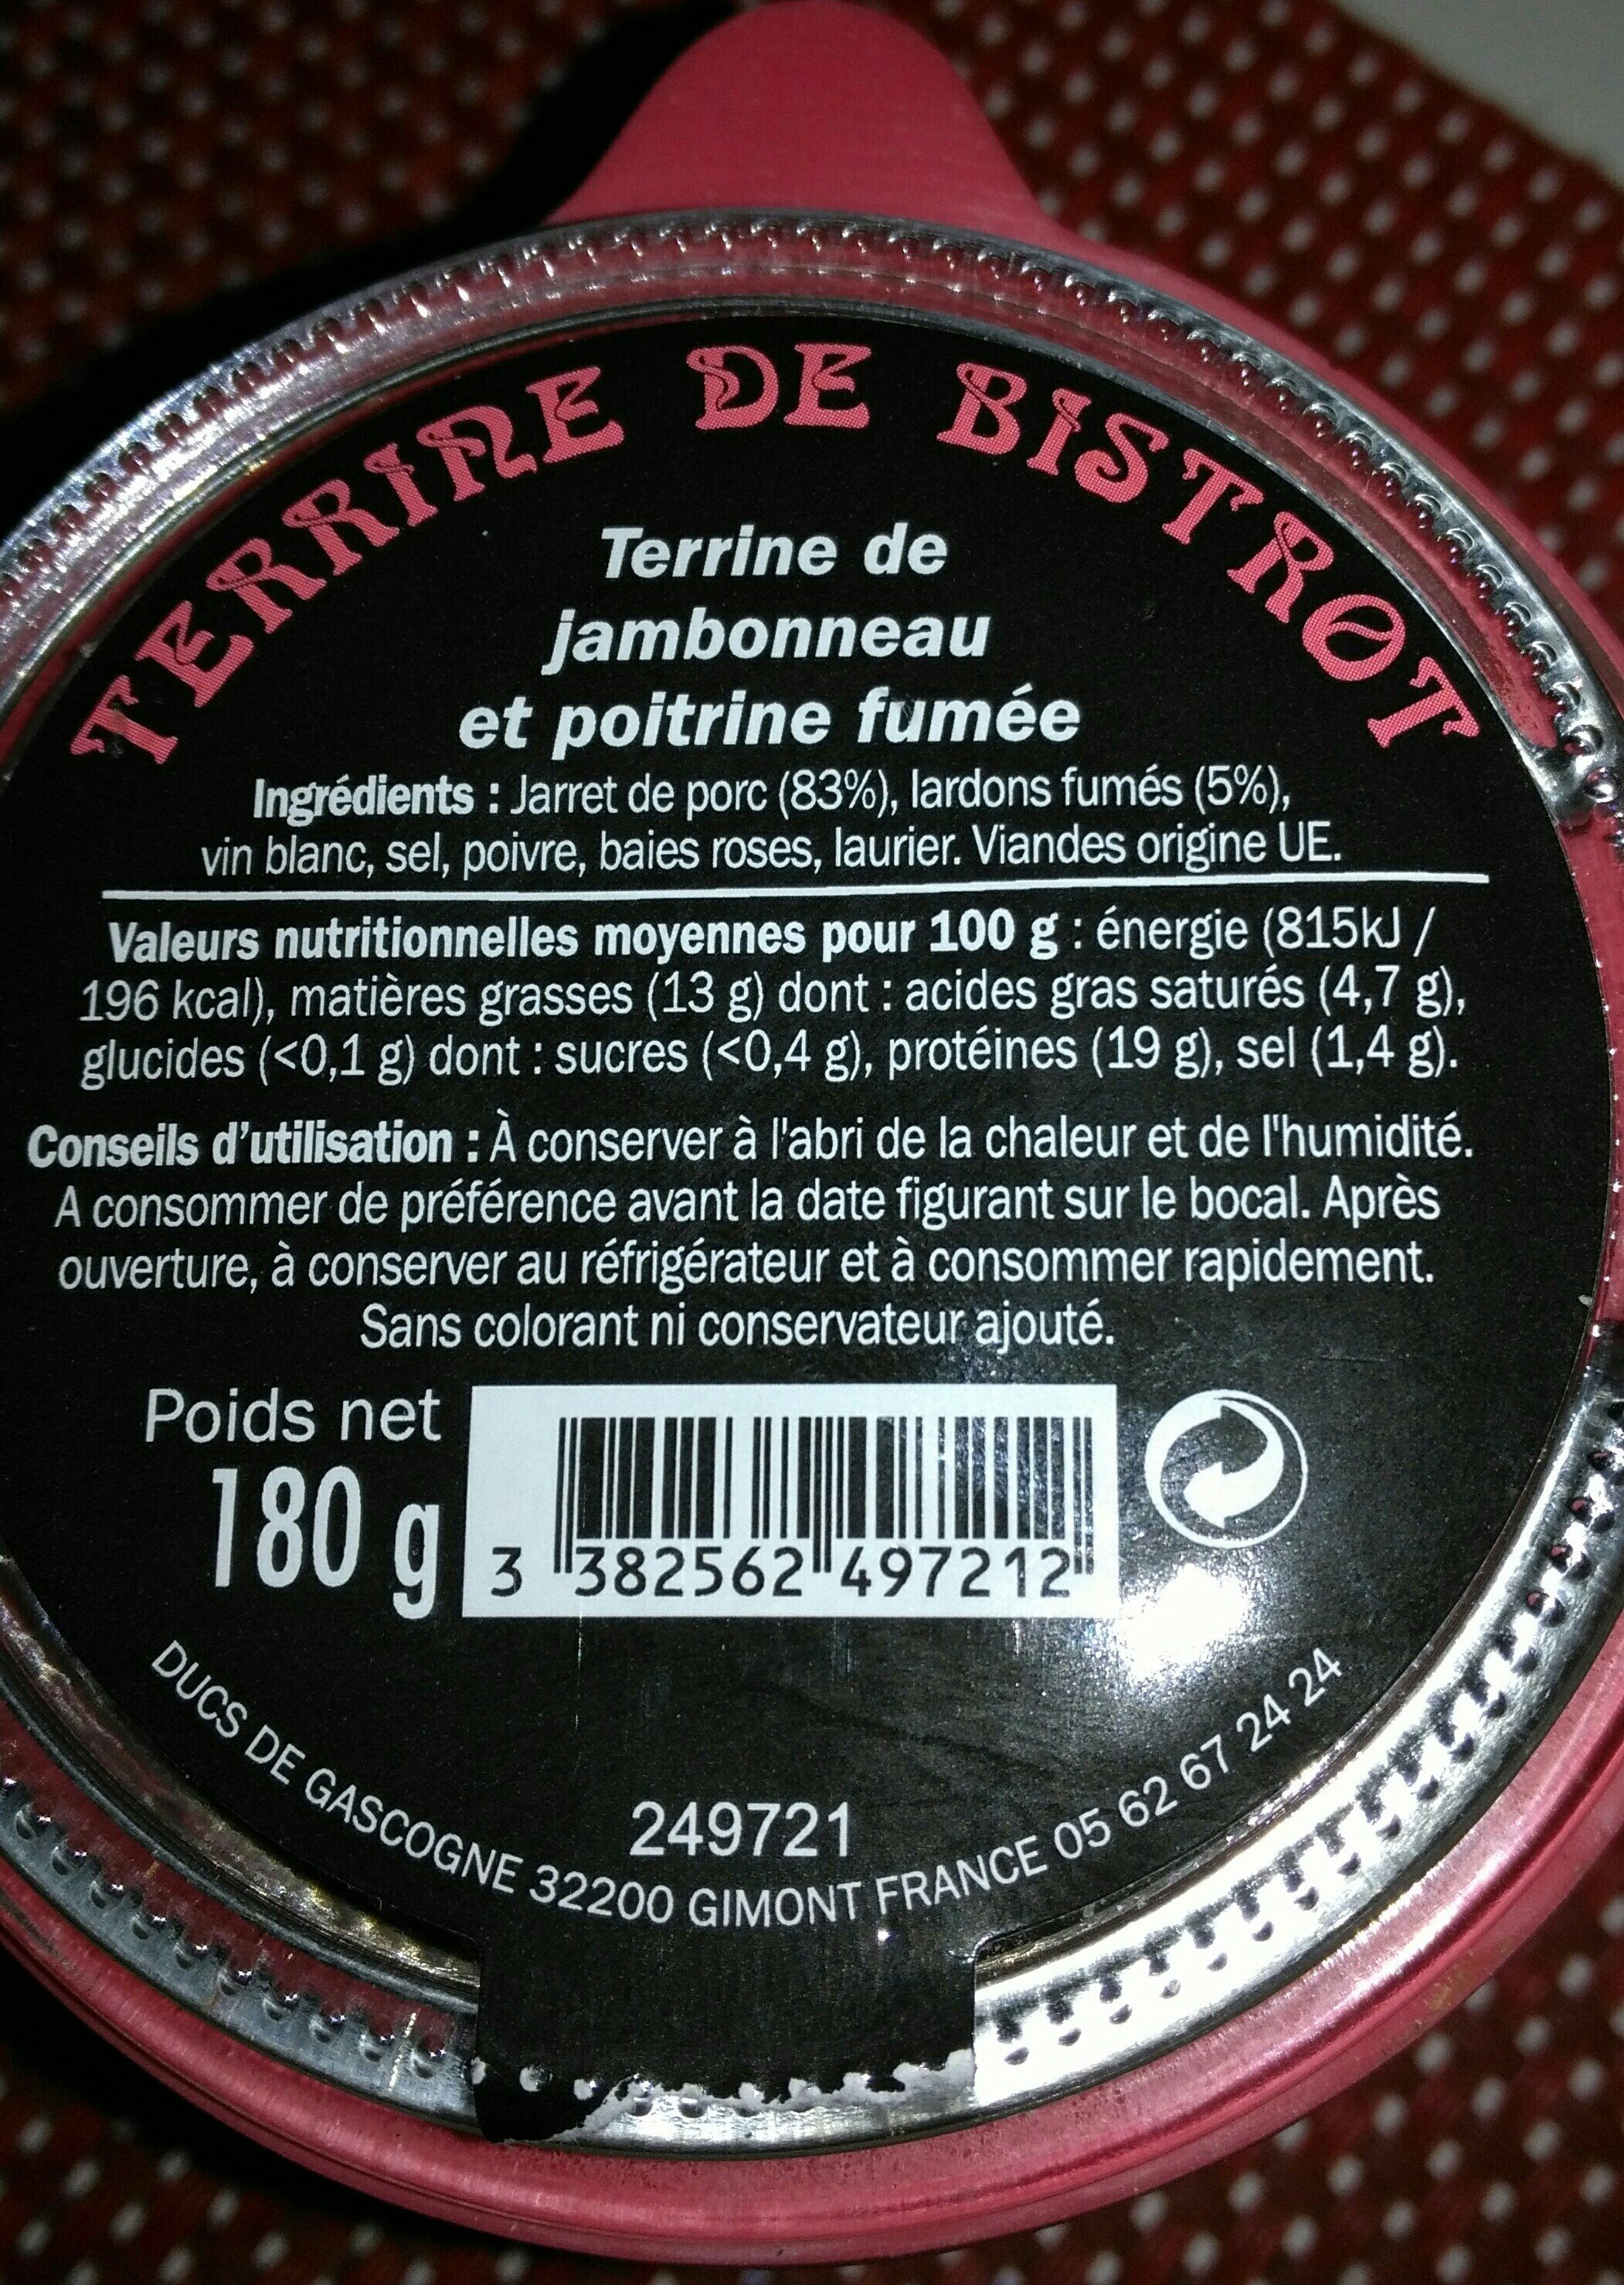 Terrine de jambonneau et poitrine fumée - Ingredients - fr